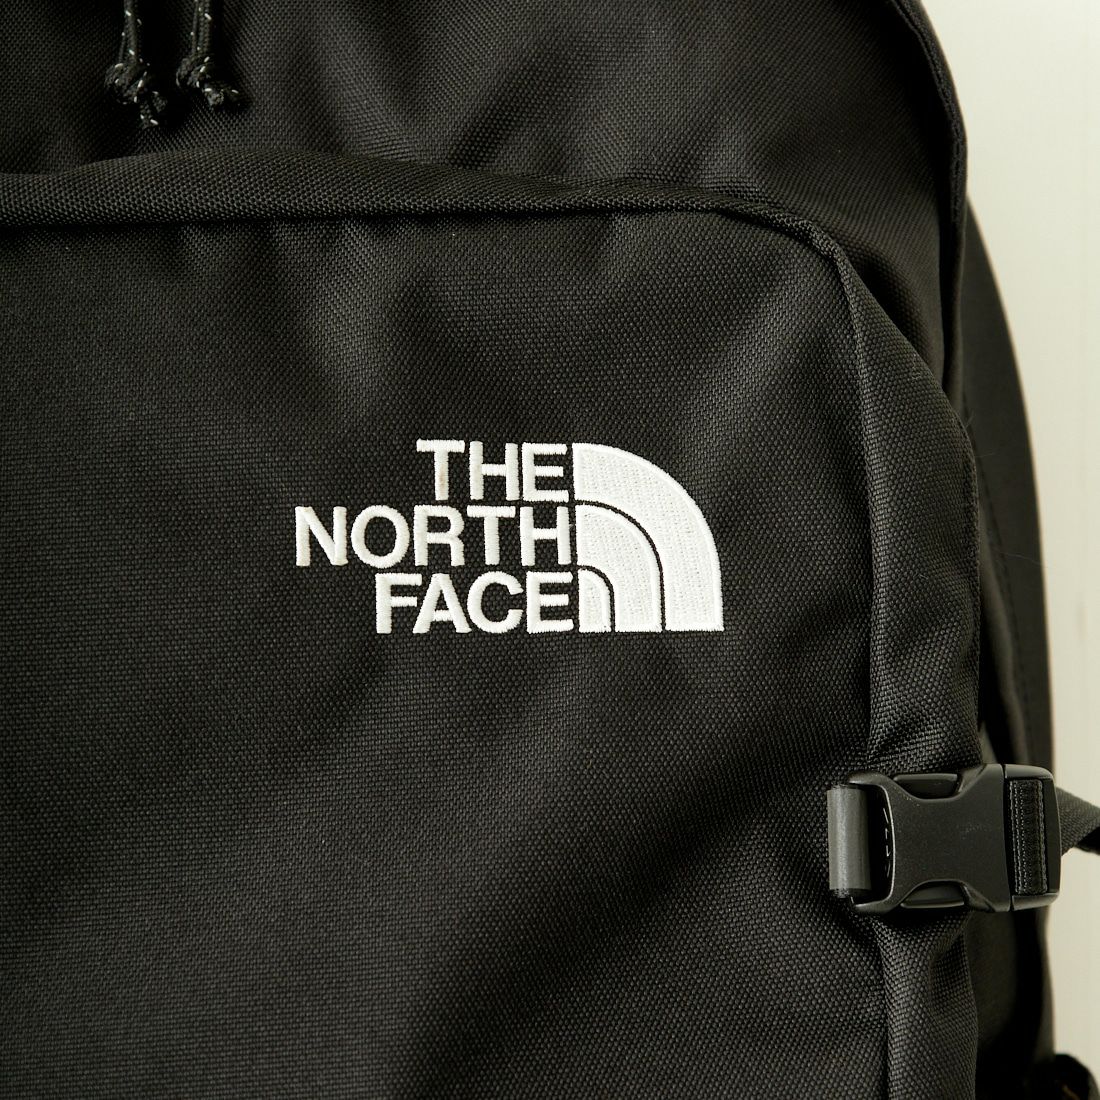 THE NORTH FACE [ザ ノースフェイス] ボルダーデイパック [NM72356] K